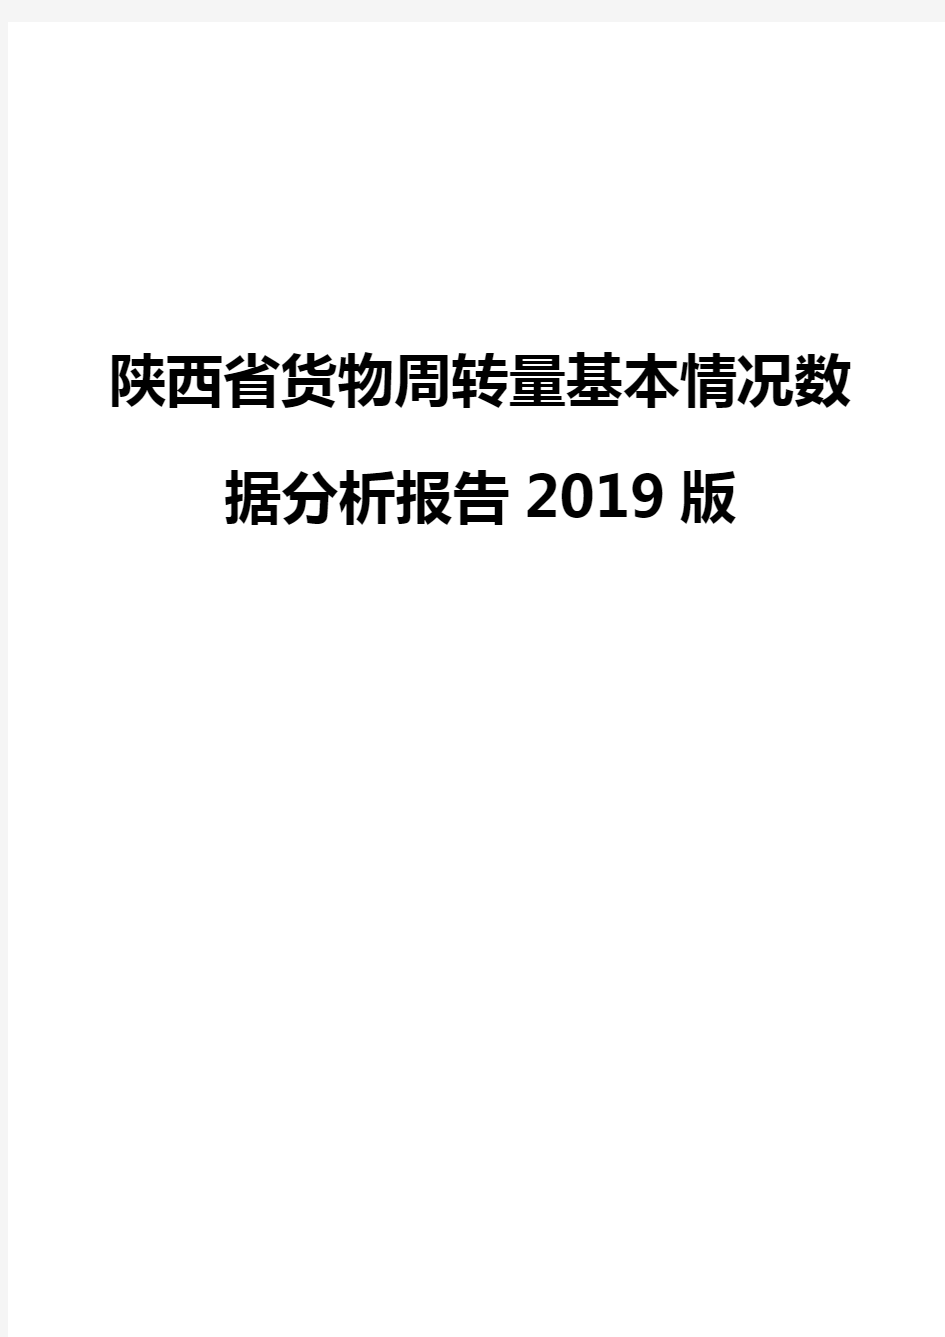 陕西省货物周转量基本情况数据分析报告2019版